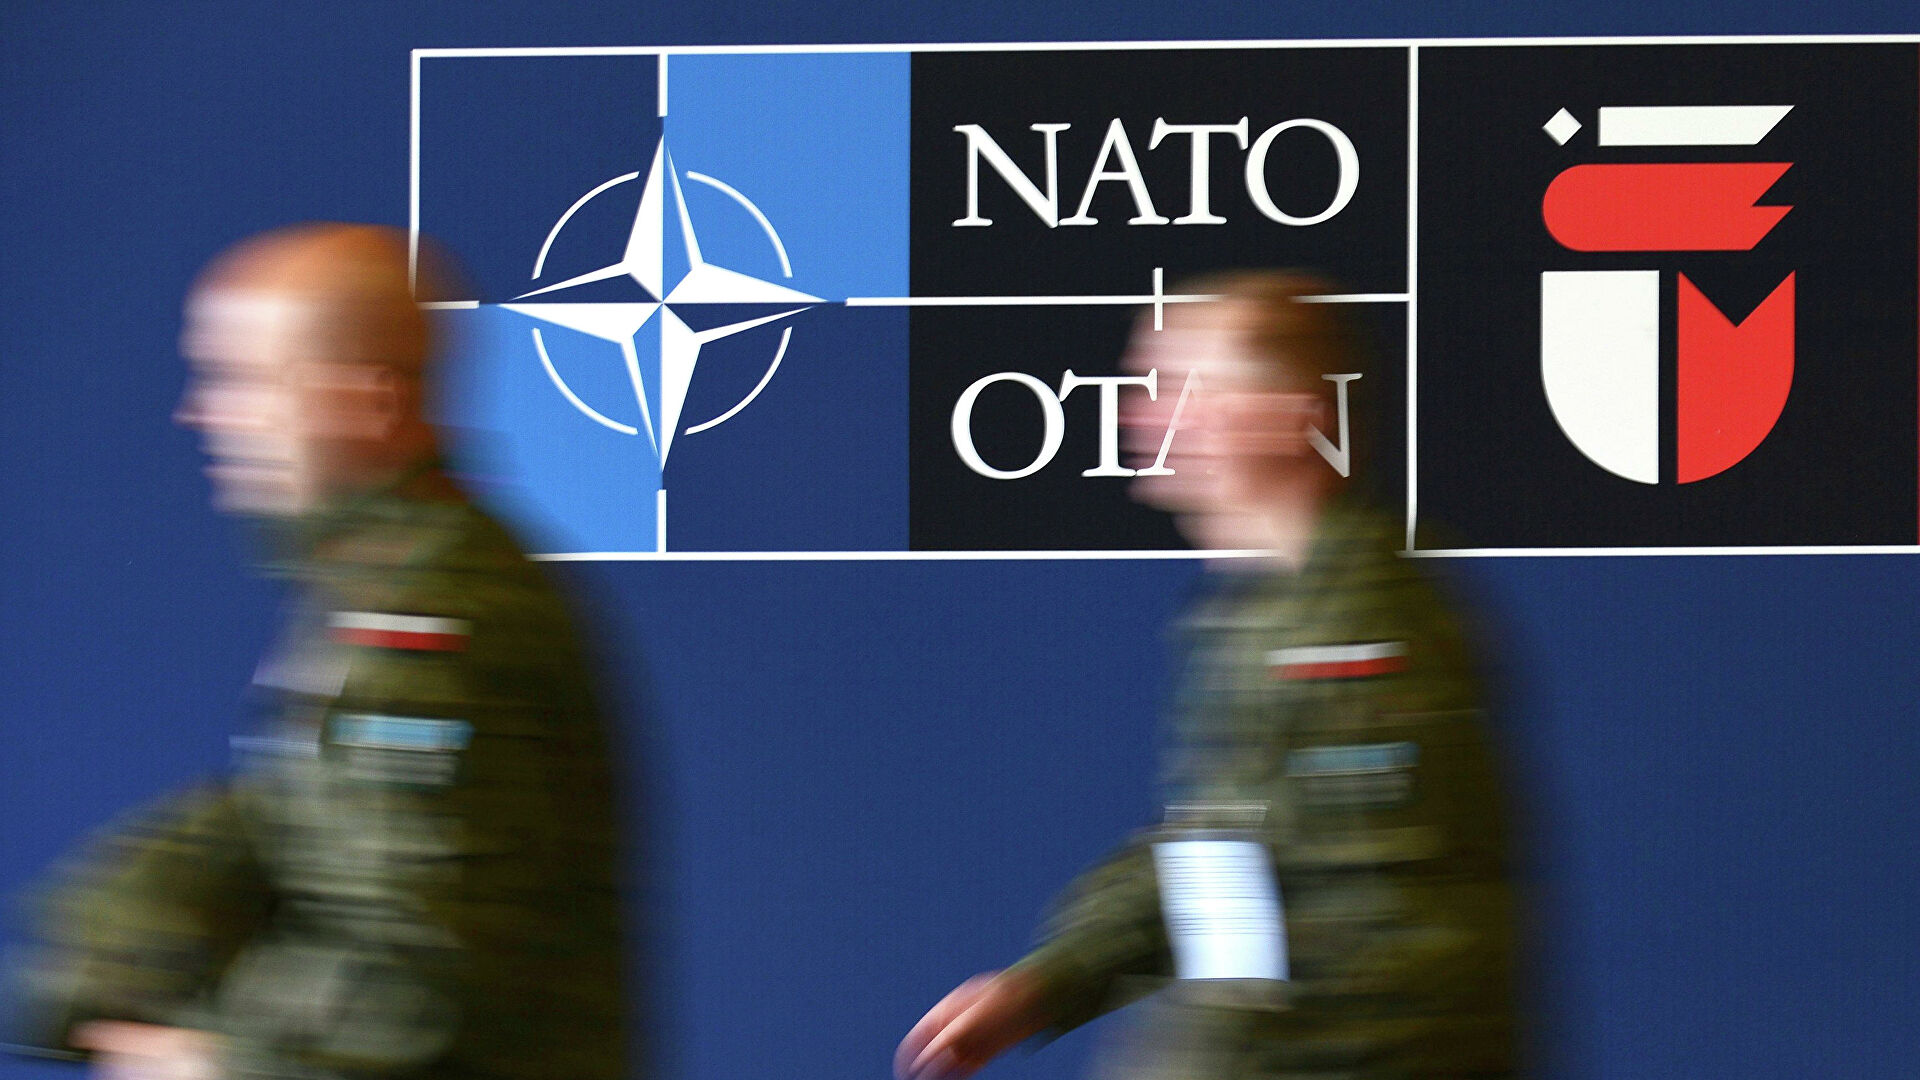 Глава МИД Лавров: США не ответили на самый главный вопрос — о нерасширении НАТО на восток